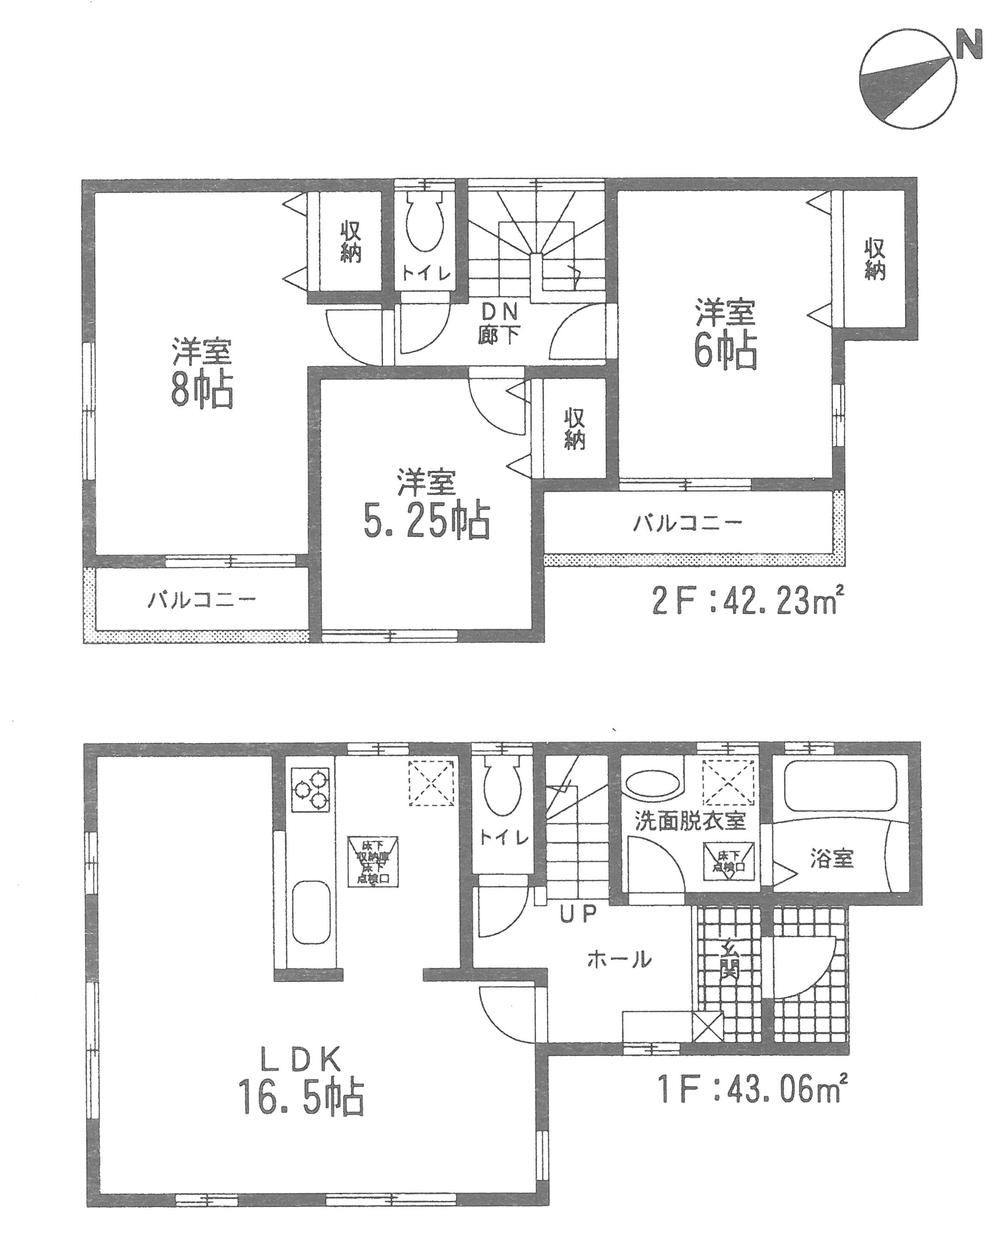 Floor plan. 21,980,000 yen, 3LDK, Land area 116.04 sq m , Building area 85.29 sq m floor plan